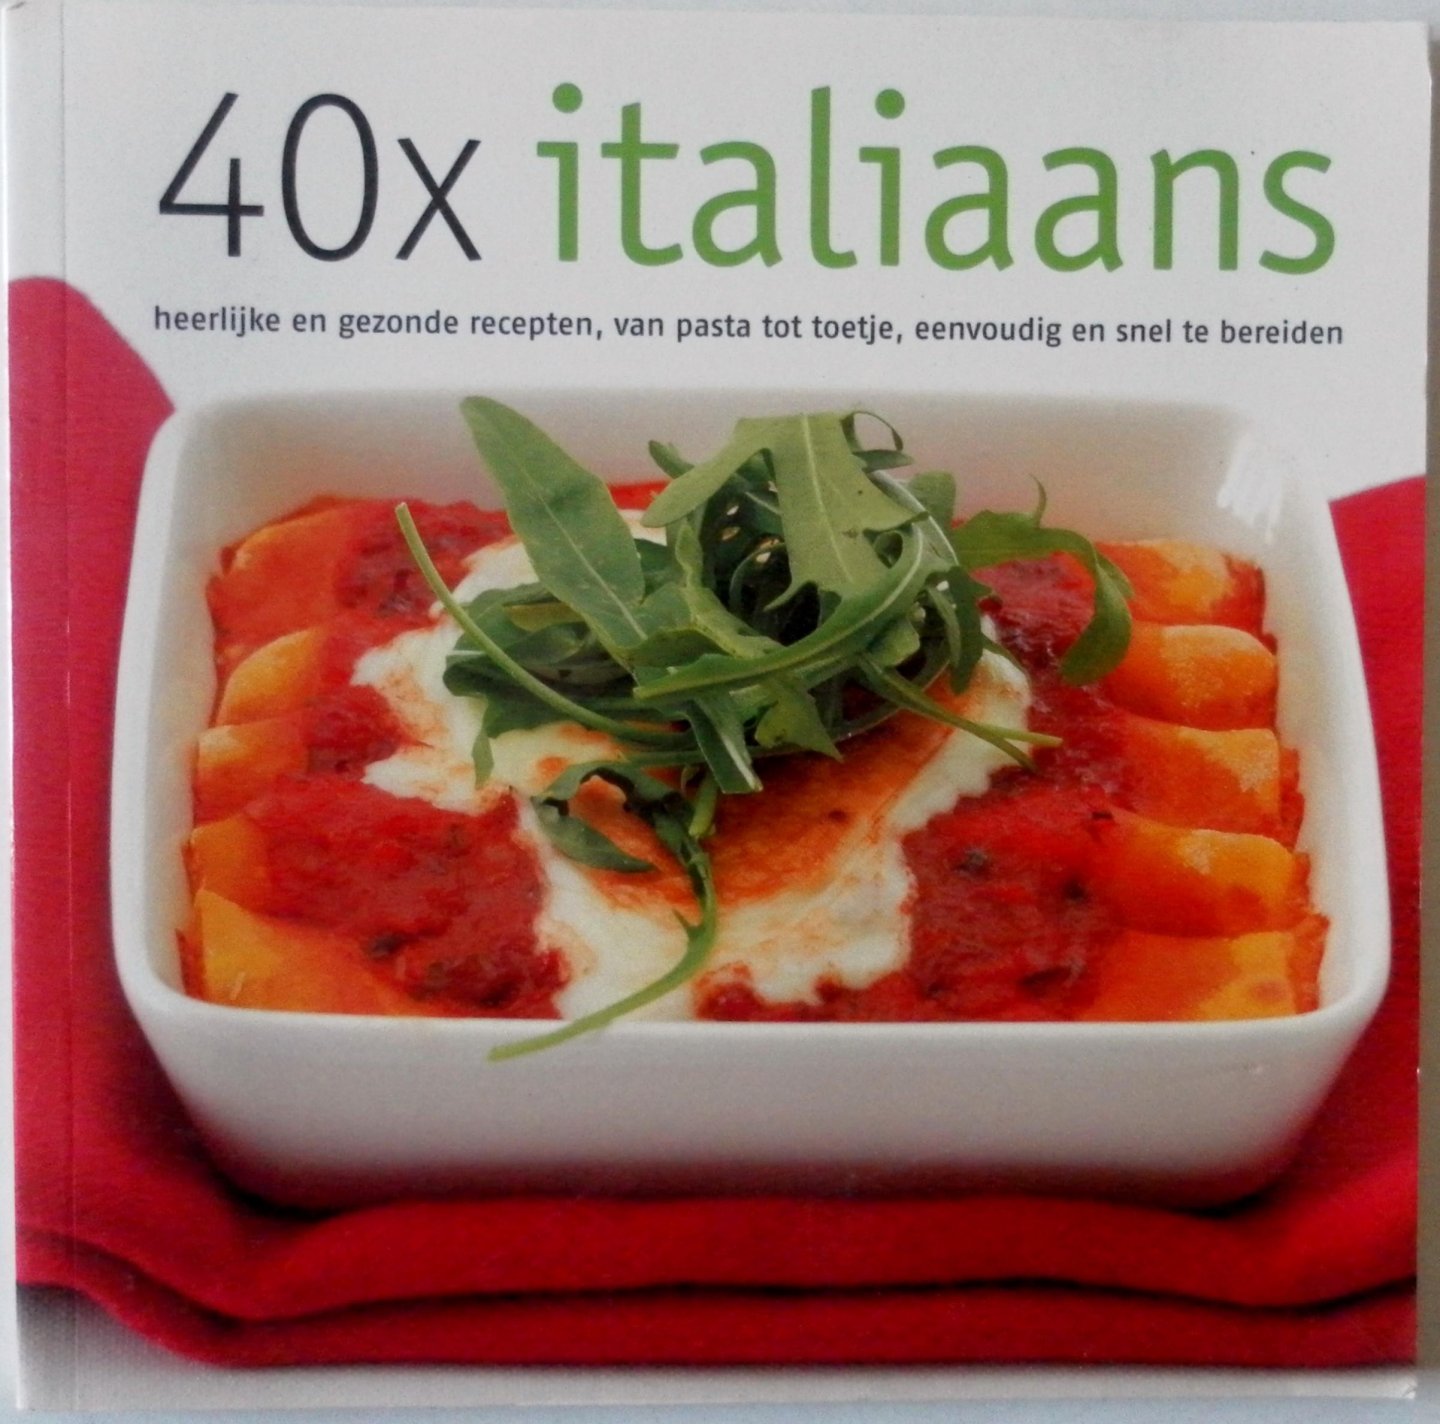 Verburg Alex, illustraties Benjamins Sven - 40 x Italiaans Heerlijke en gezonde recepten, van pasta tot toetje, eenvoudig en snel te bereiden